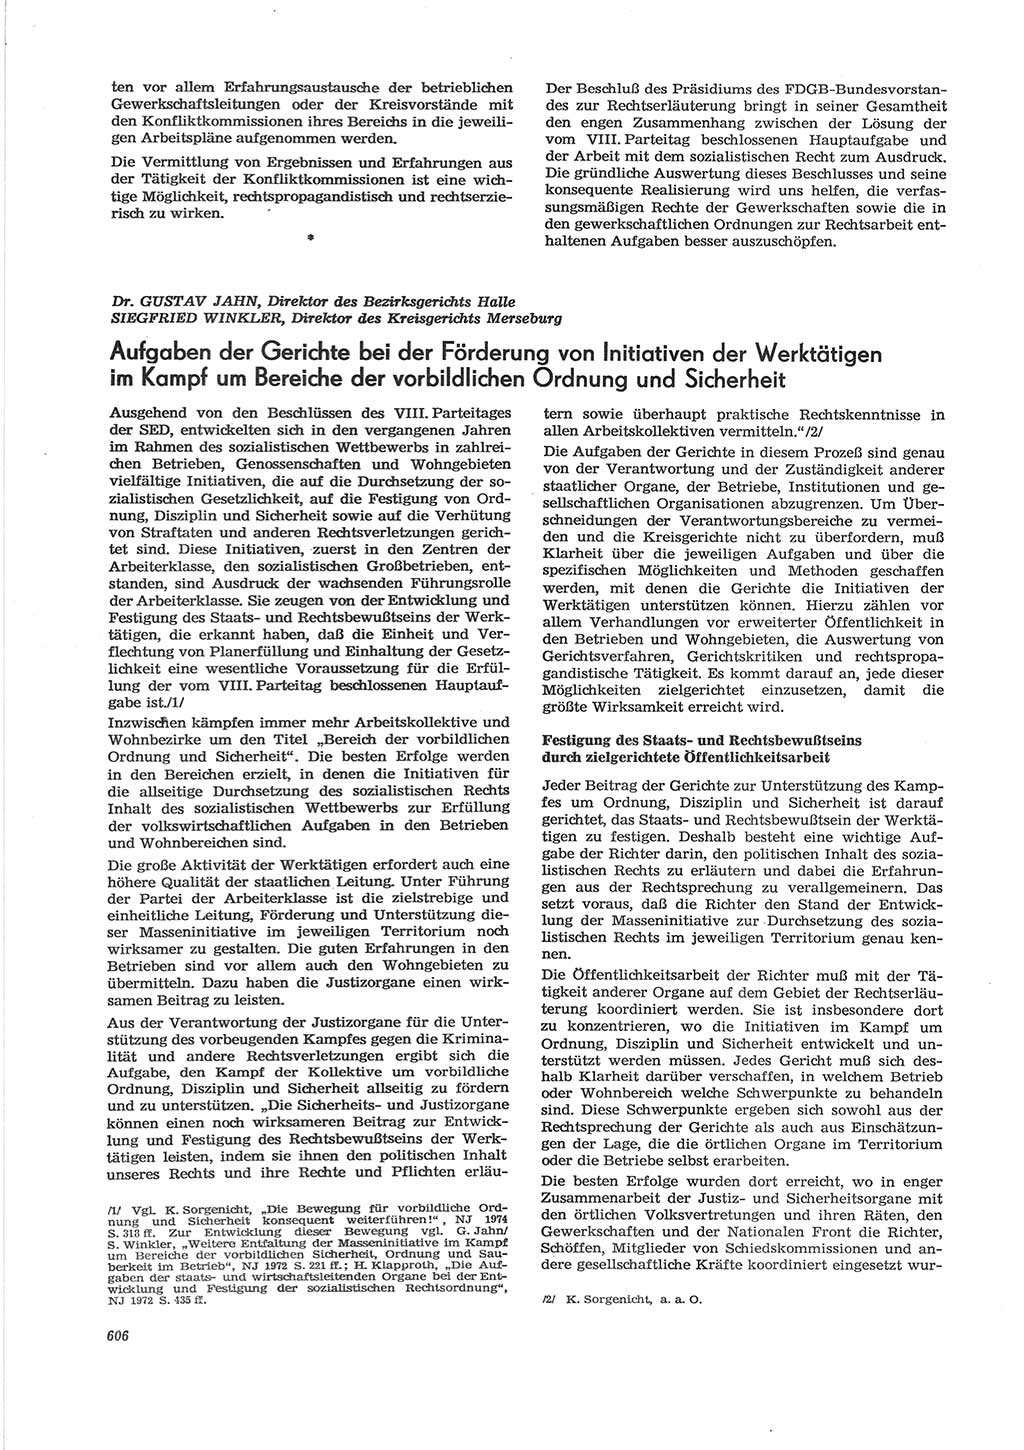 Neue Justiz (NJ), Zeitschrift für Recht und Rechtswissenschaft [Deutsche Demokratische Republik (DDR)], 28. Jahrgang 1974, Seite 606 (NJ DDR 1974, S. 606)